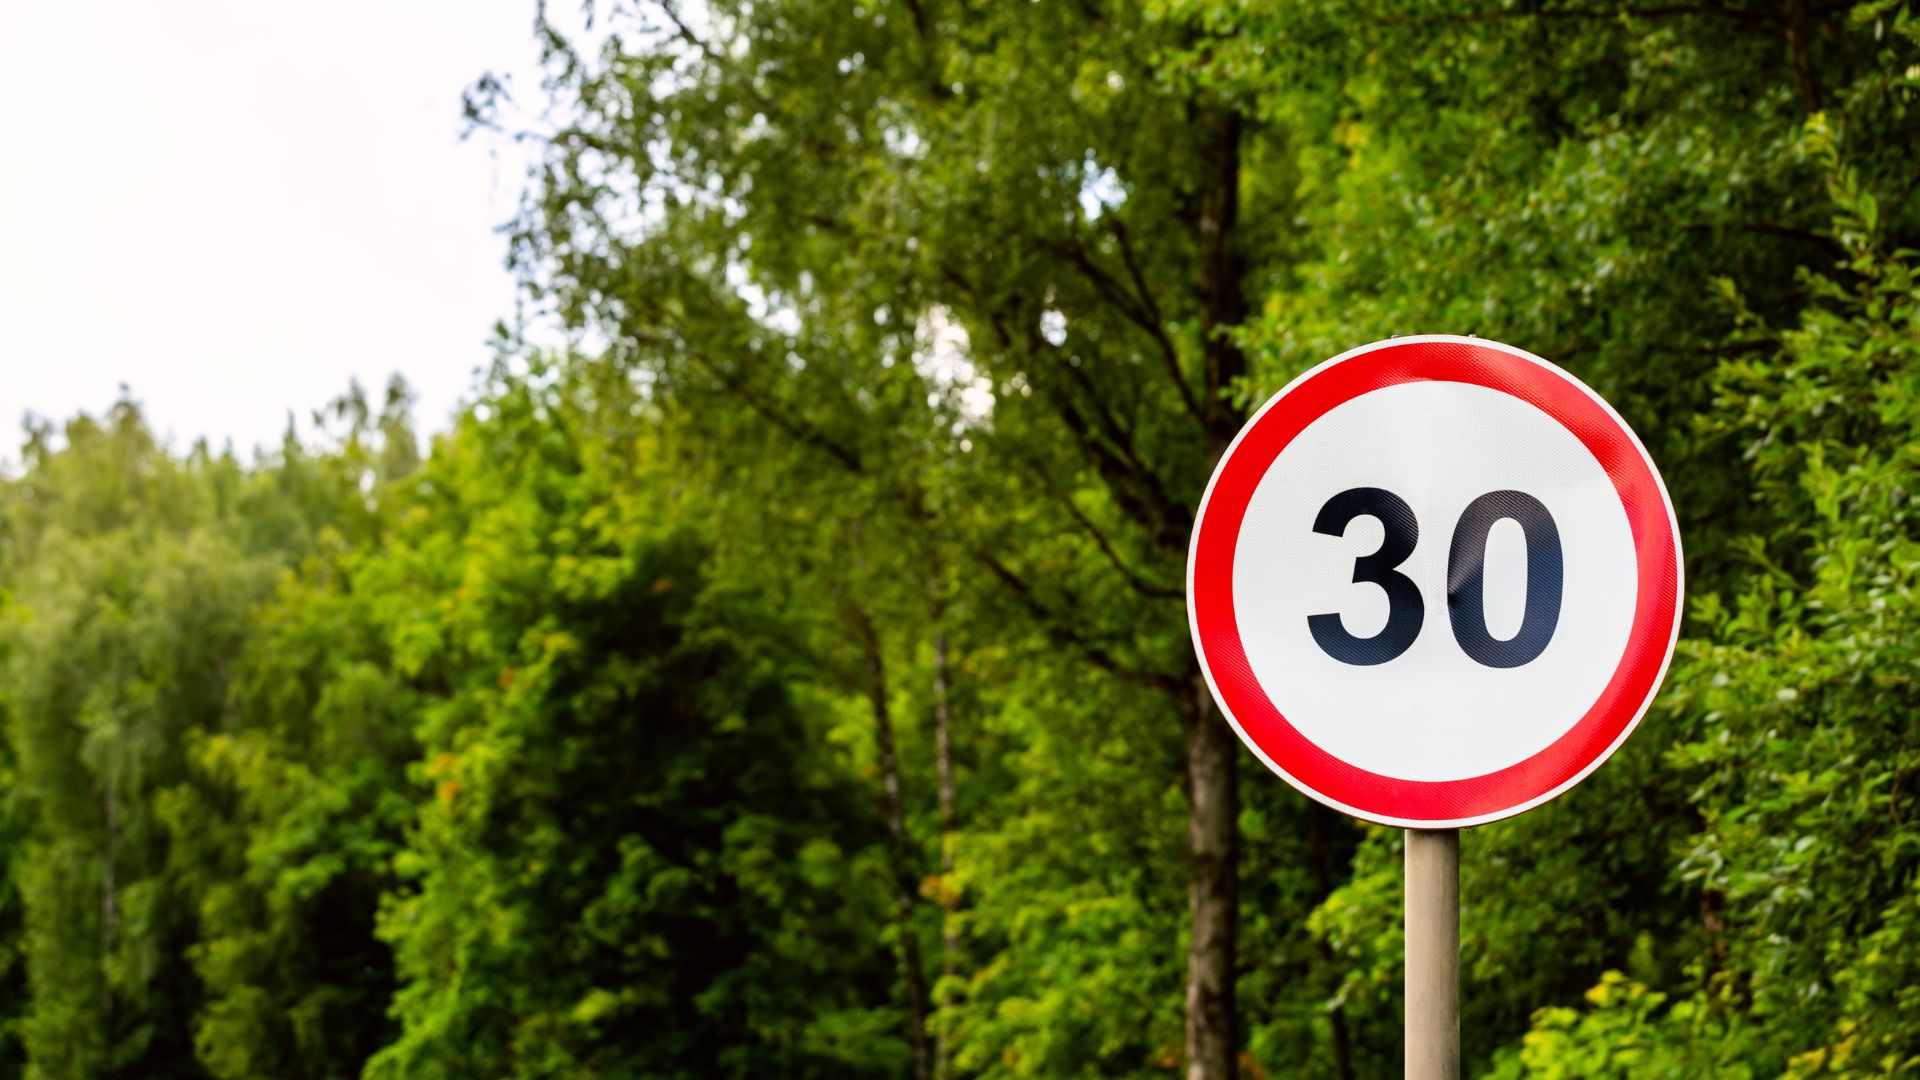 Ελβετία: Μικρότερη ταχύτητα στις πόλεις ίσον λιγότερα ατυχήματα